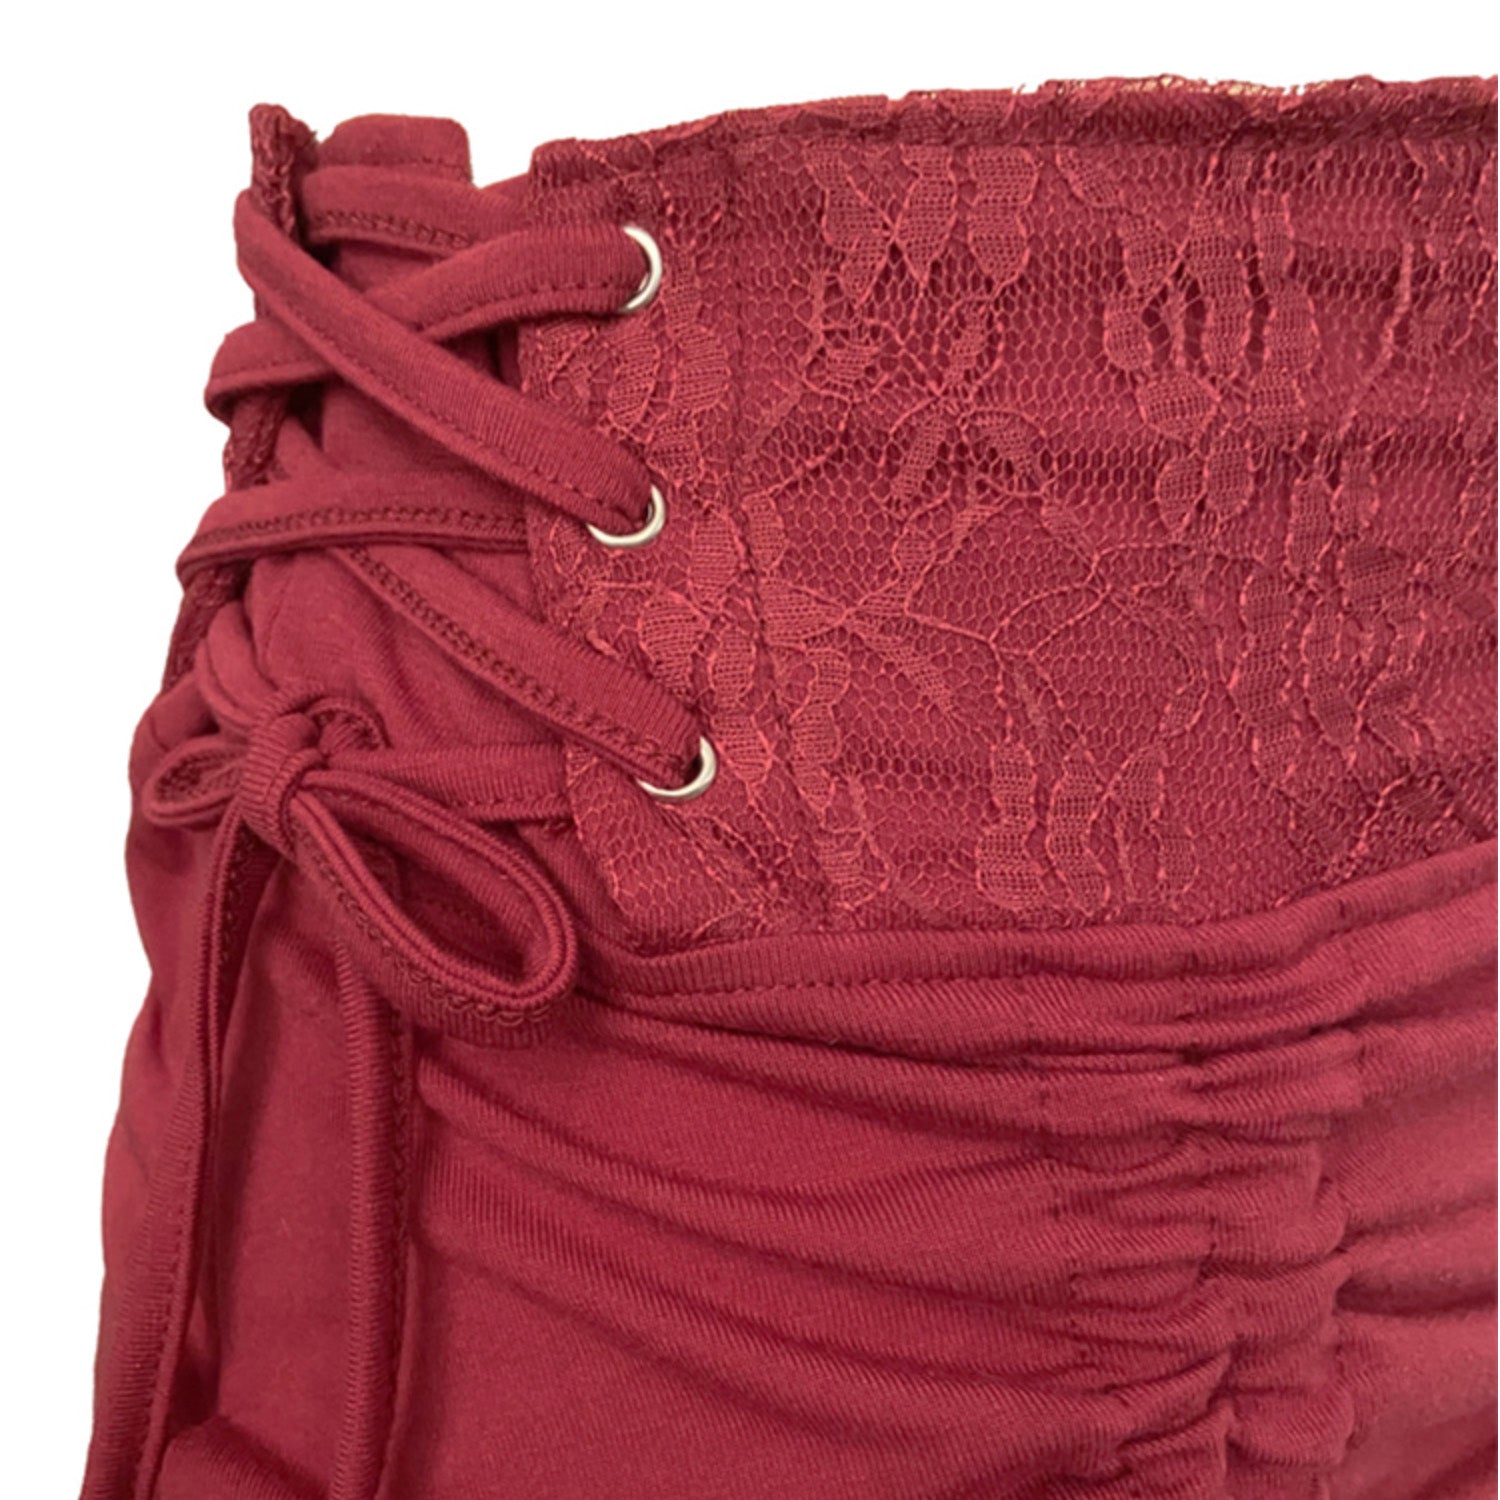 Ladies Hi/Lo Fairy Grunge Festival Side Tie Lace Trim Skirt - 3 Colours